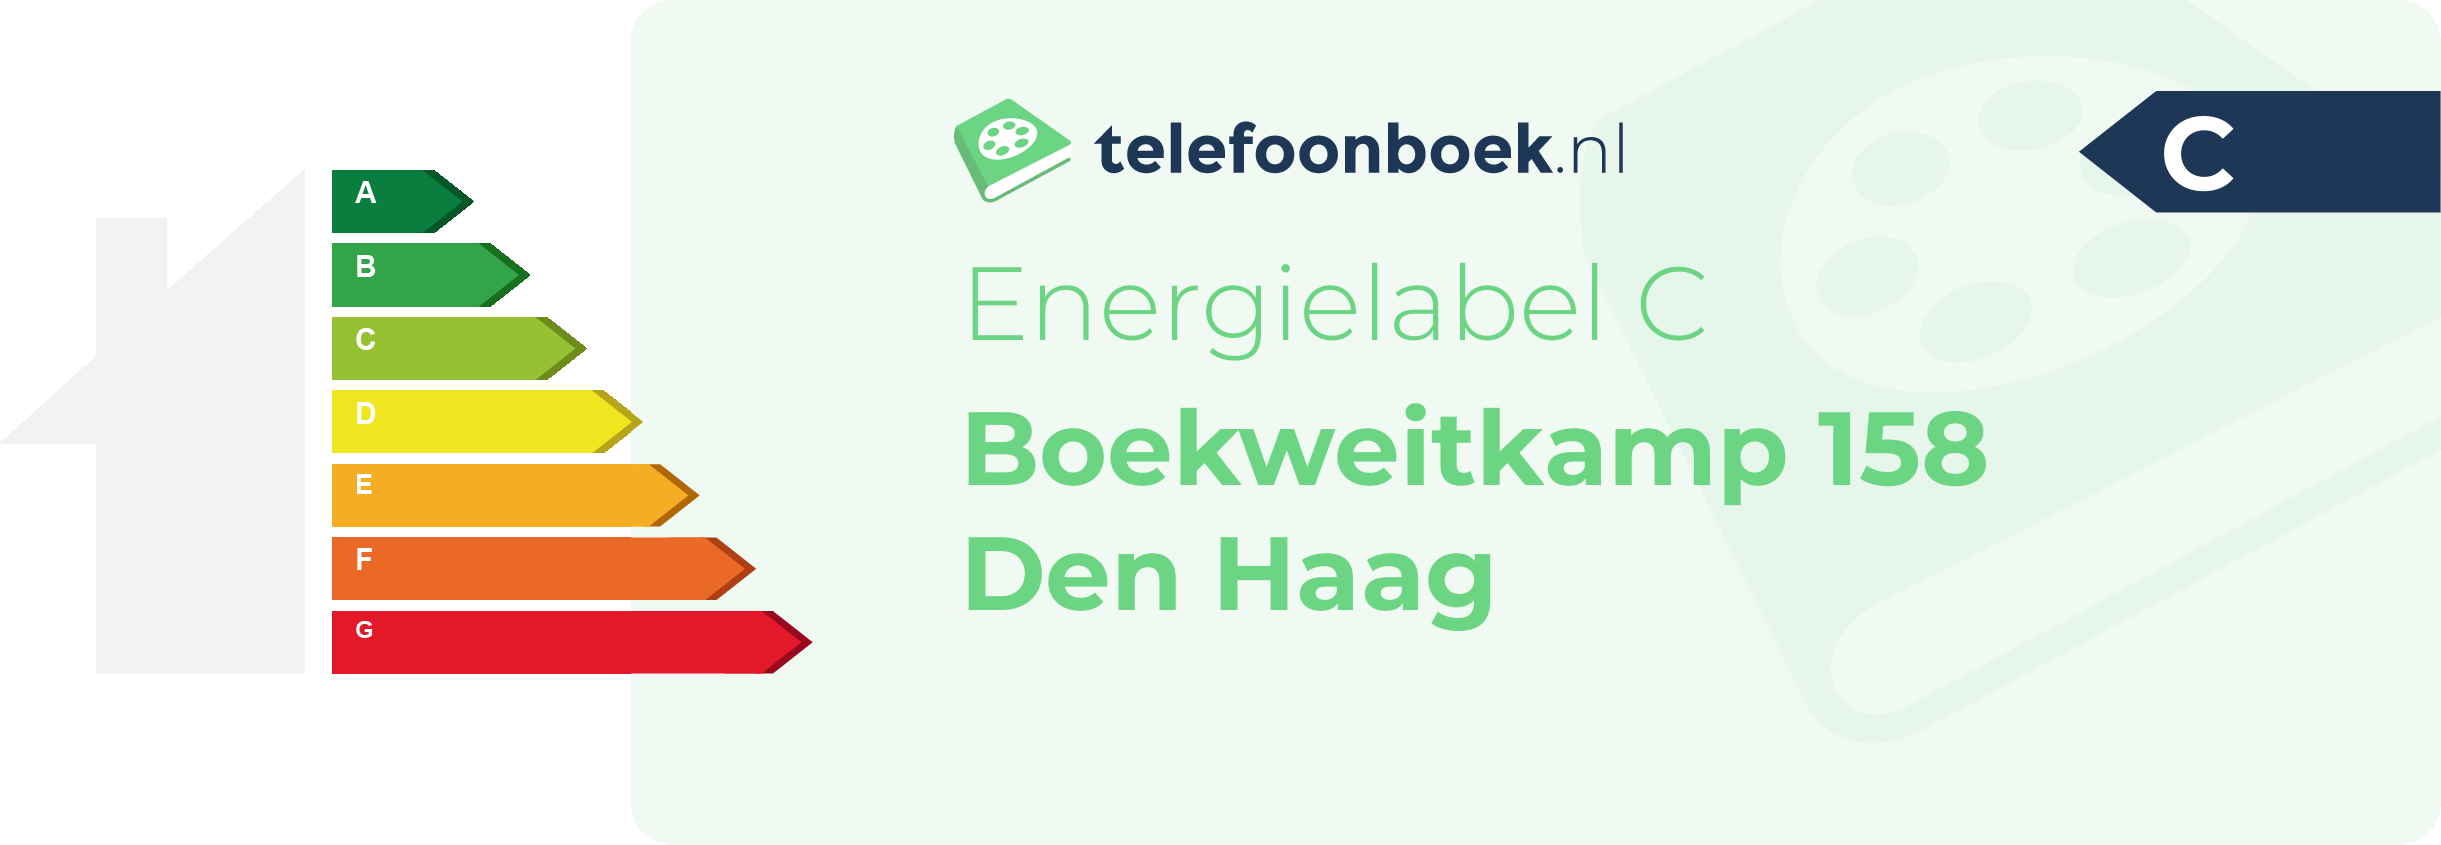 Energielabel Boekweitkamp 158 Den Haag